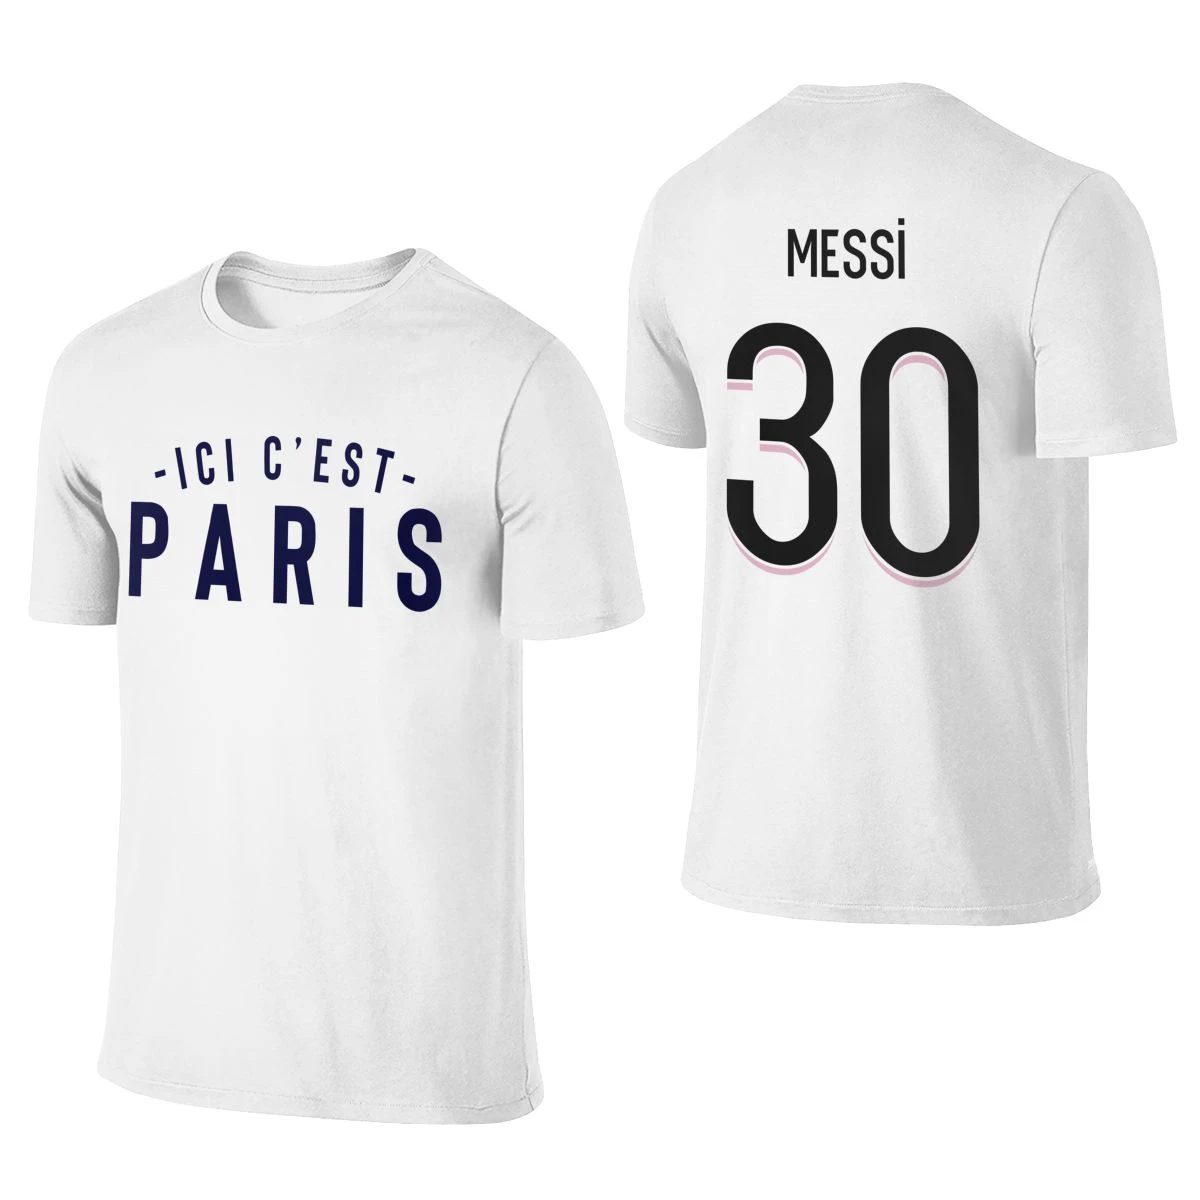 Koreaans Gelukkig Troosteloos Mannen T shirt 30 Lionel Messi Ici C 'Welkom Naar Parijs Est Parijs  Afdrukken Tee T shirt Vrouwen 100% Katoenen T shirt voor Fans Kleding|T-shirts|  - AliExpress